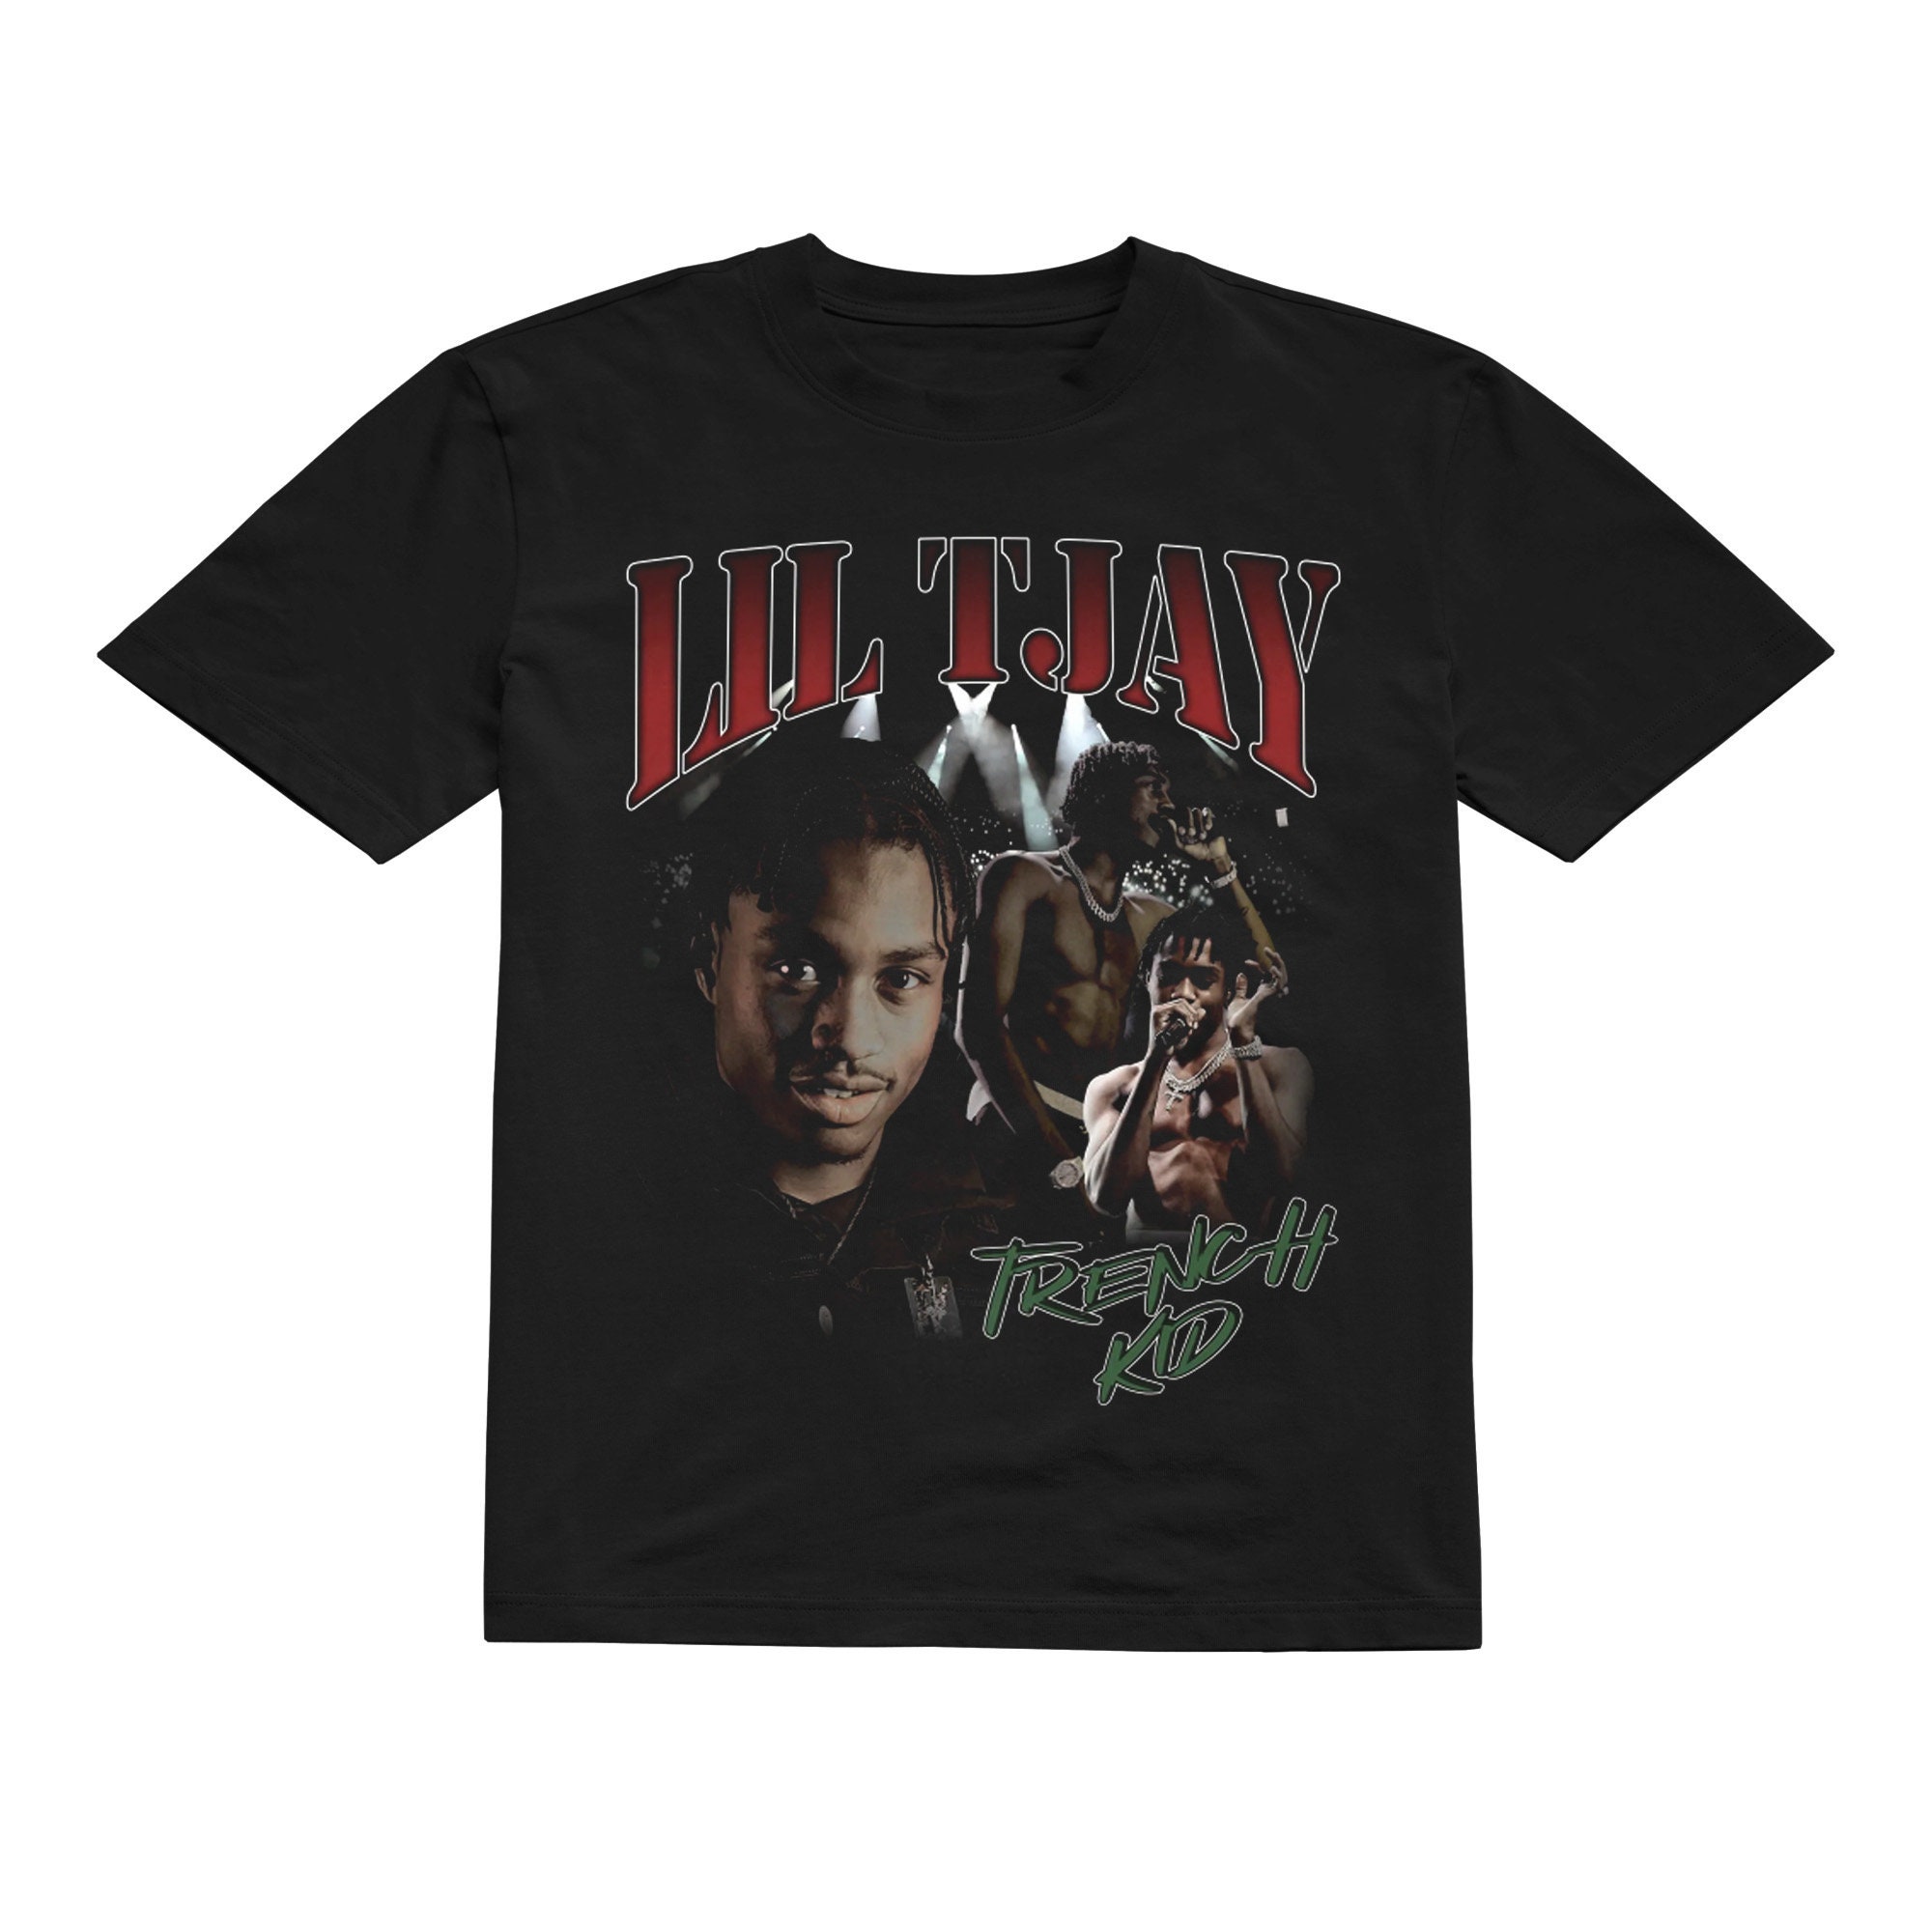 Lil Tjay Vintage x Bootleg Style Rap T-shirt